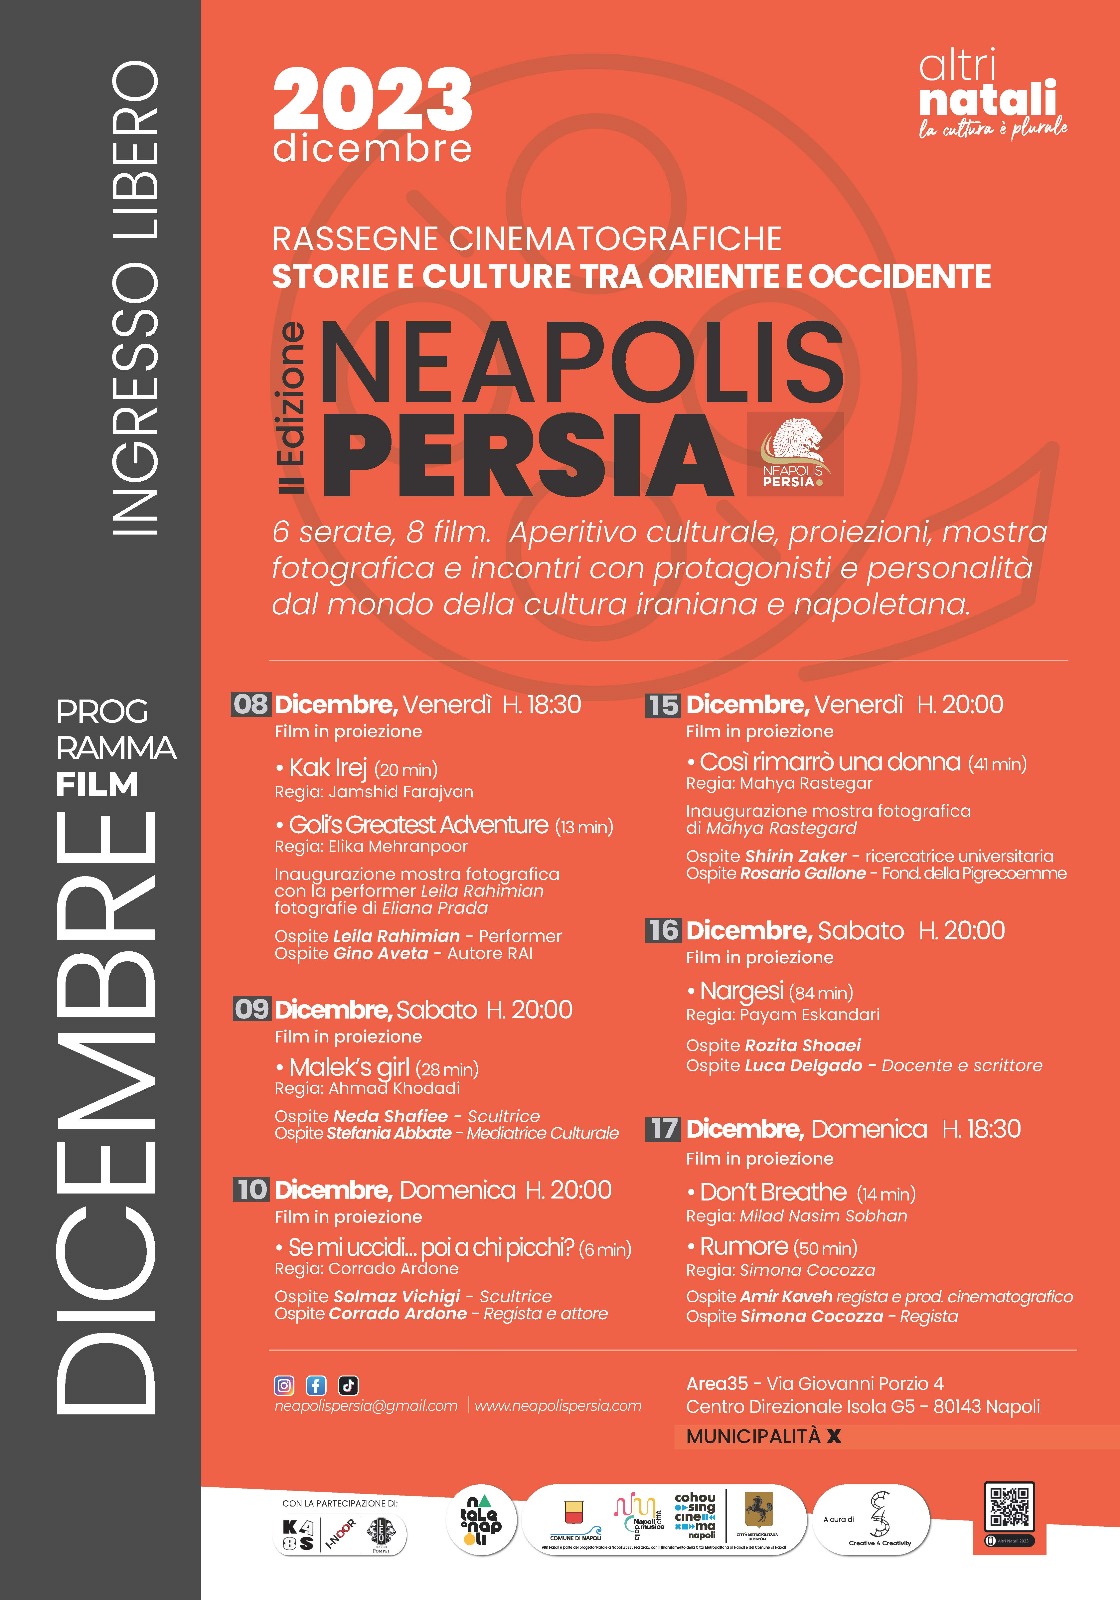 NeapoliPersia: viaggio di storie e culture tra Oriente e Occidente, al via la Seconda Edizione